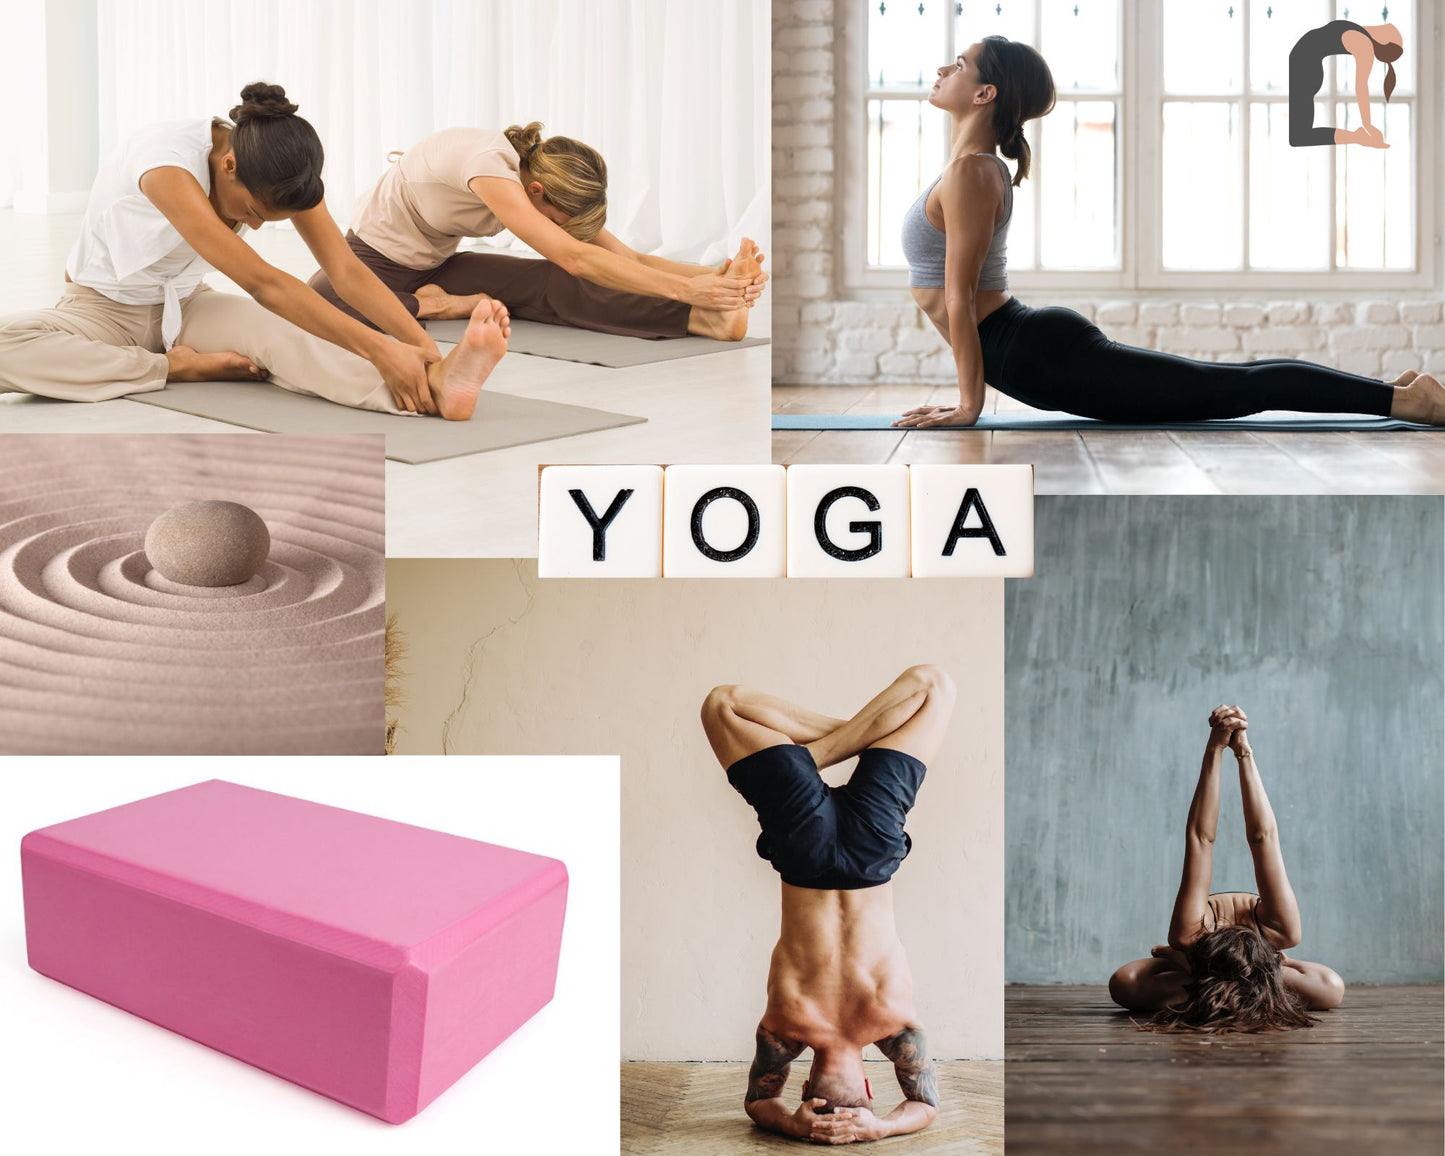 Briques de yoga rose